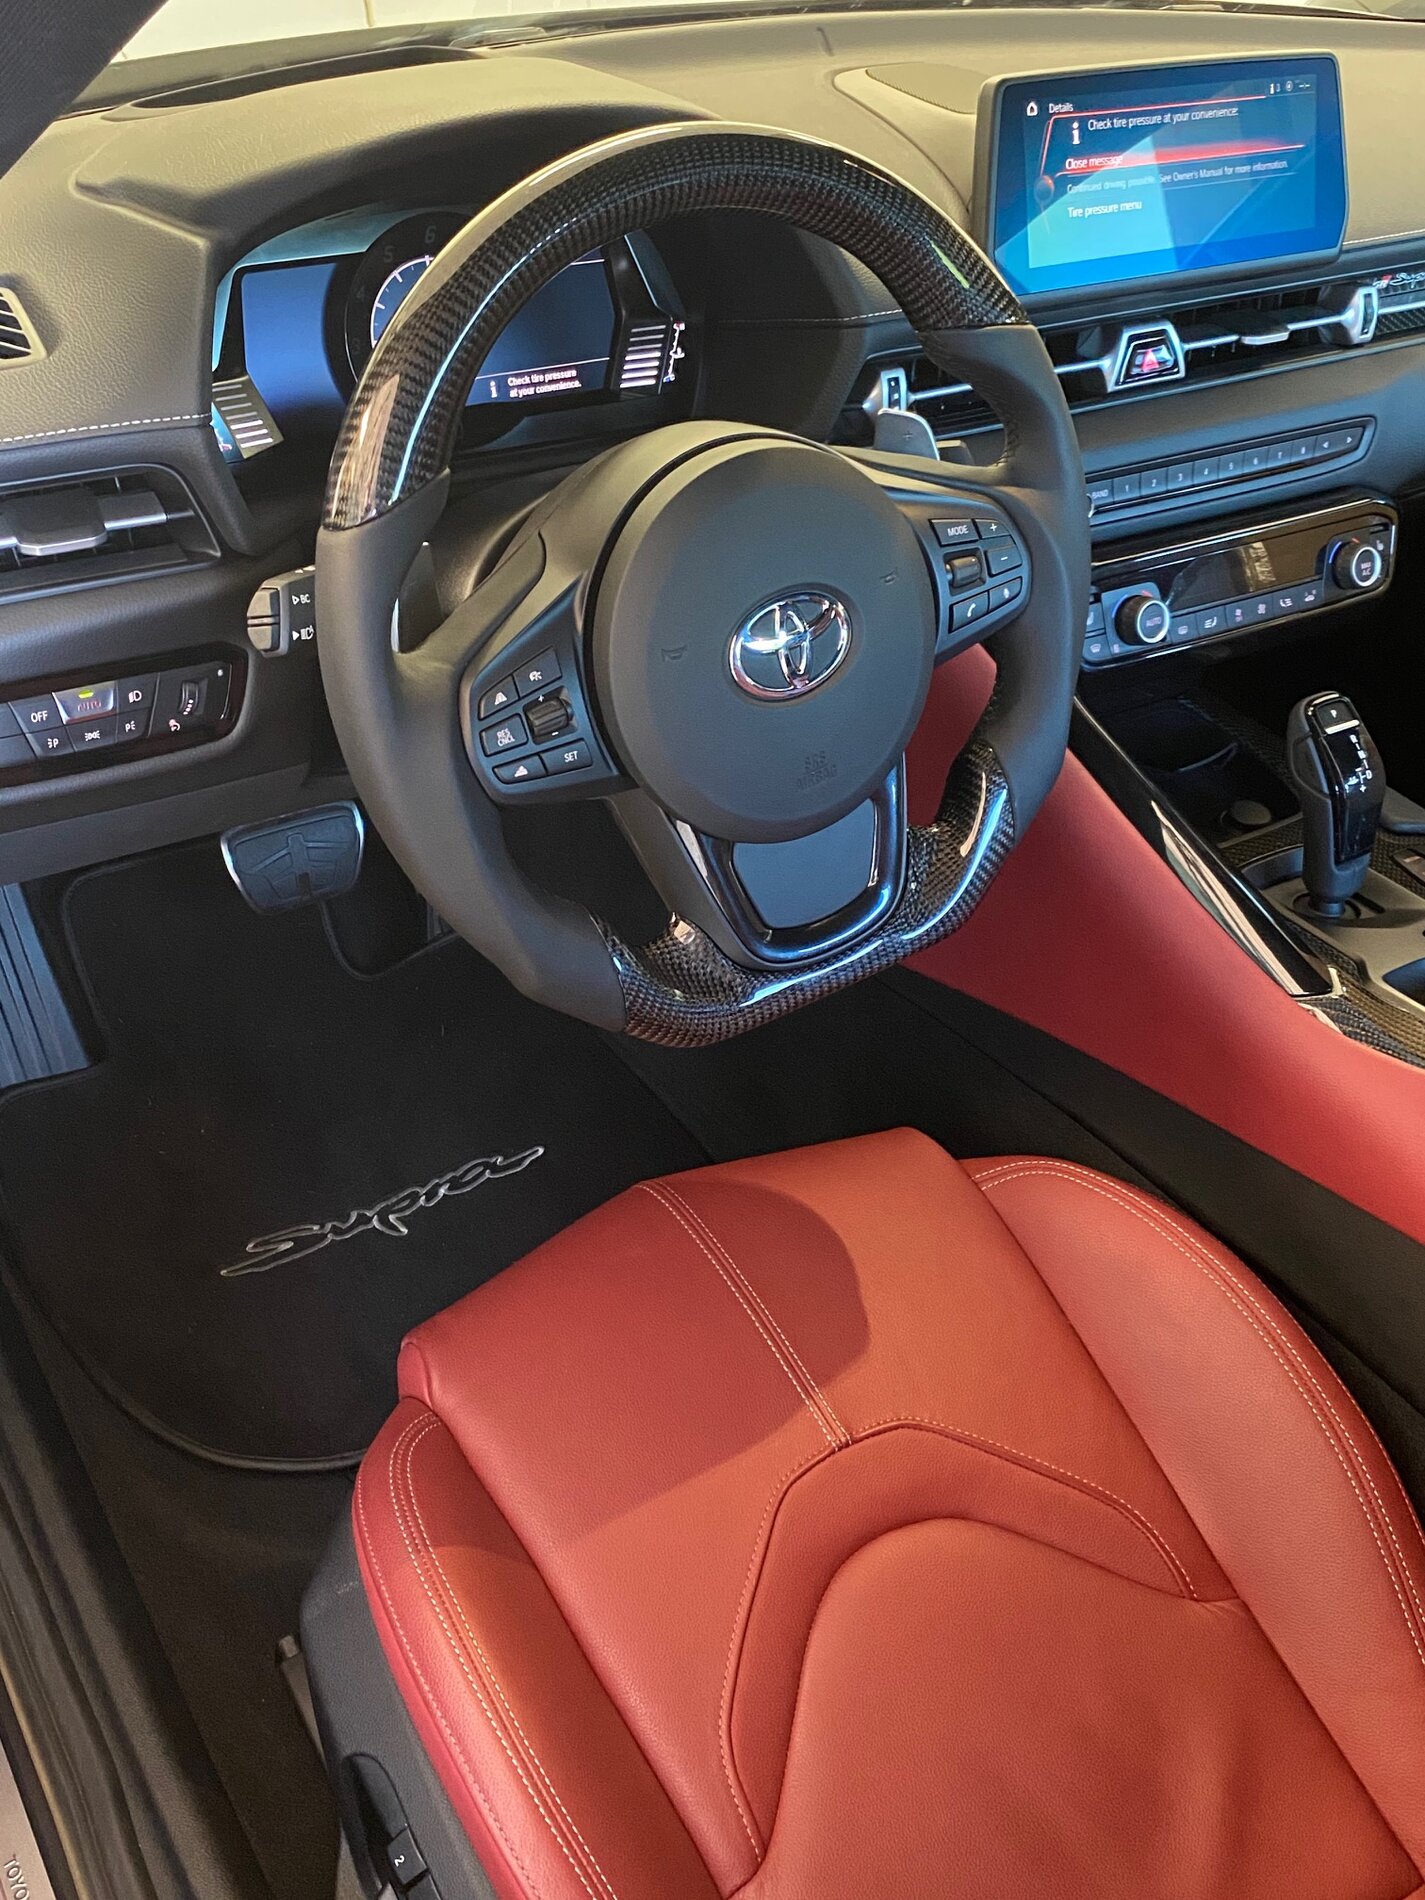 Supra Steering Wheel.jpg